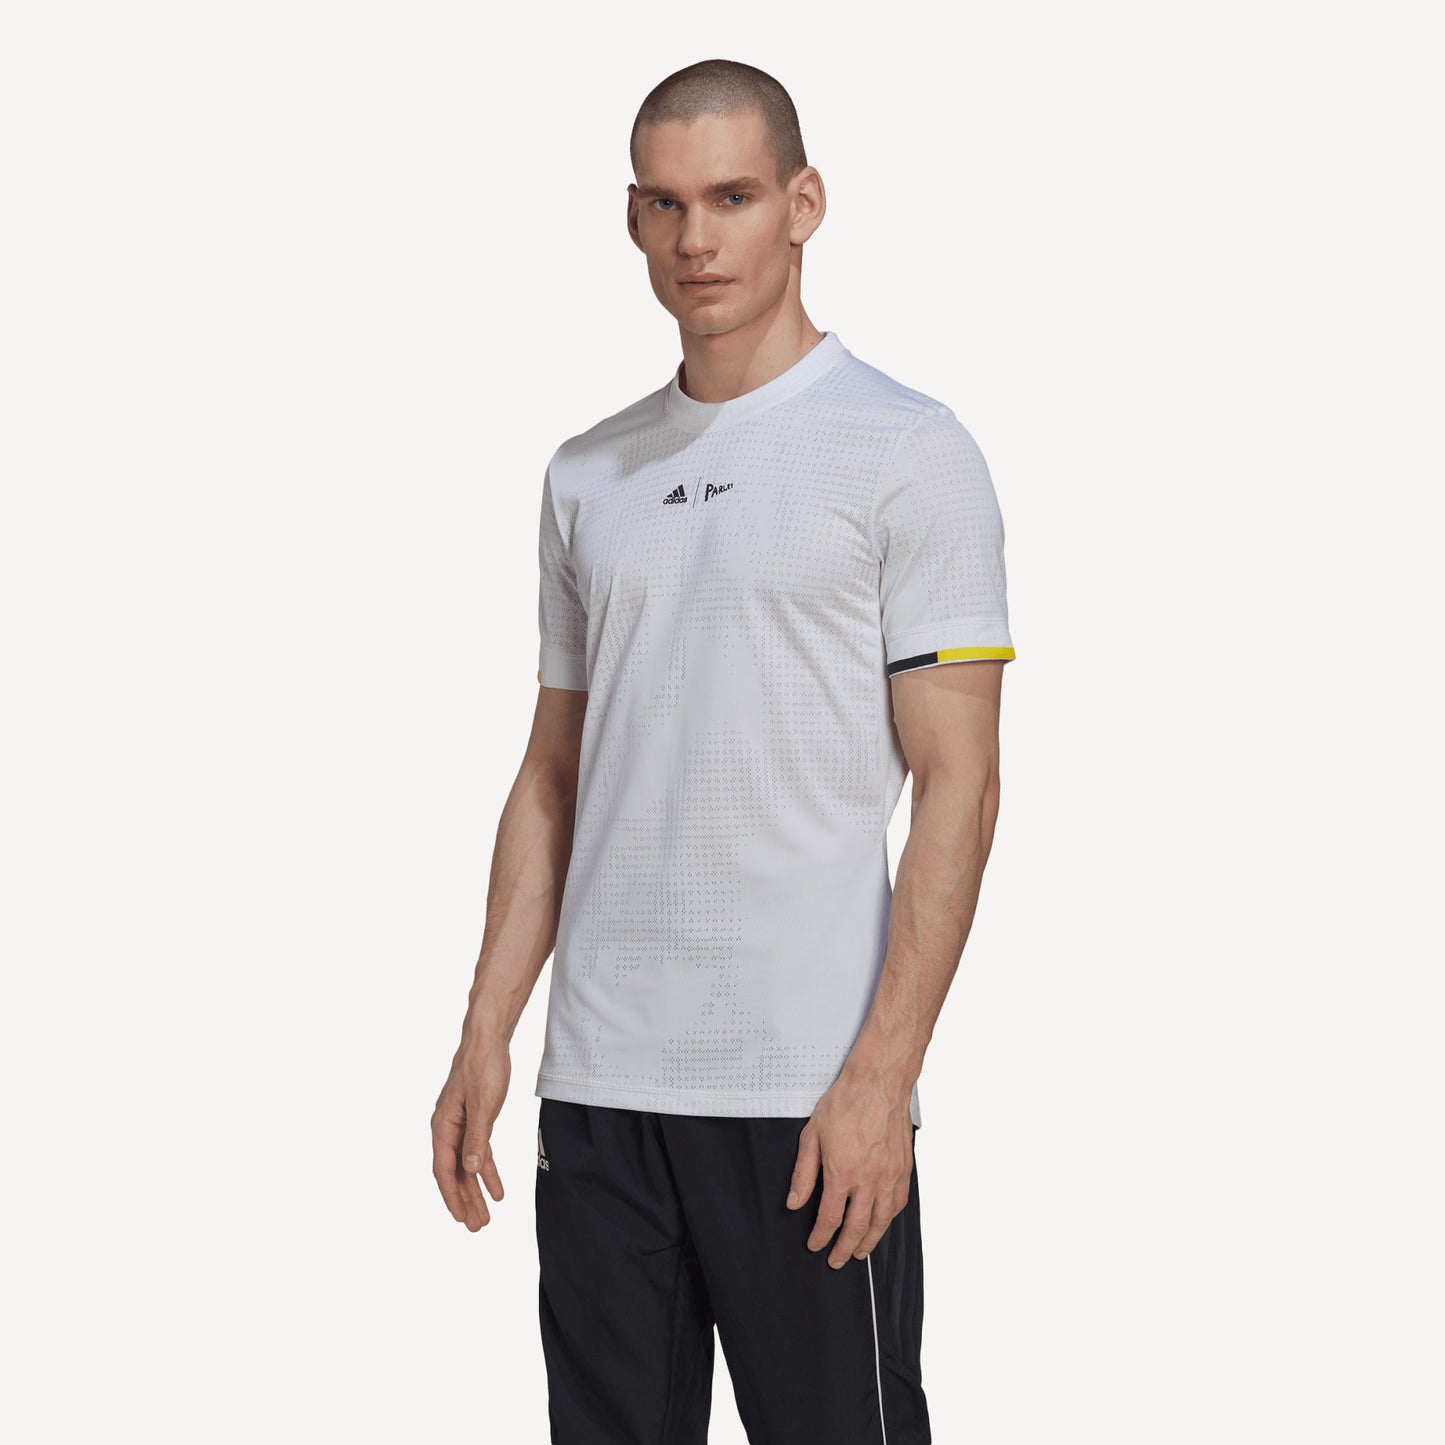 adidas London Freelift Men's Tennis Shirt White (1)